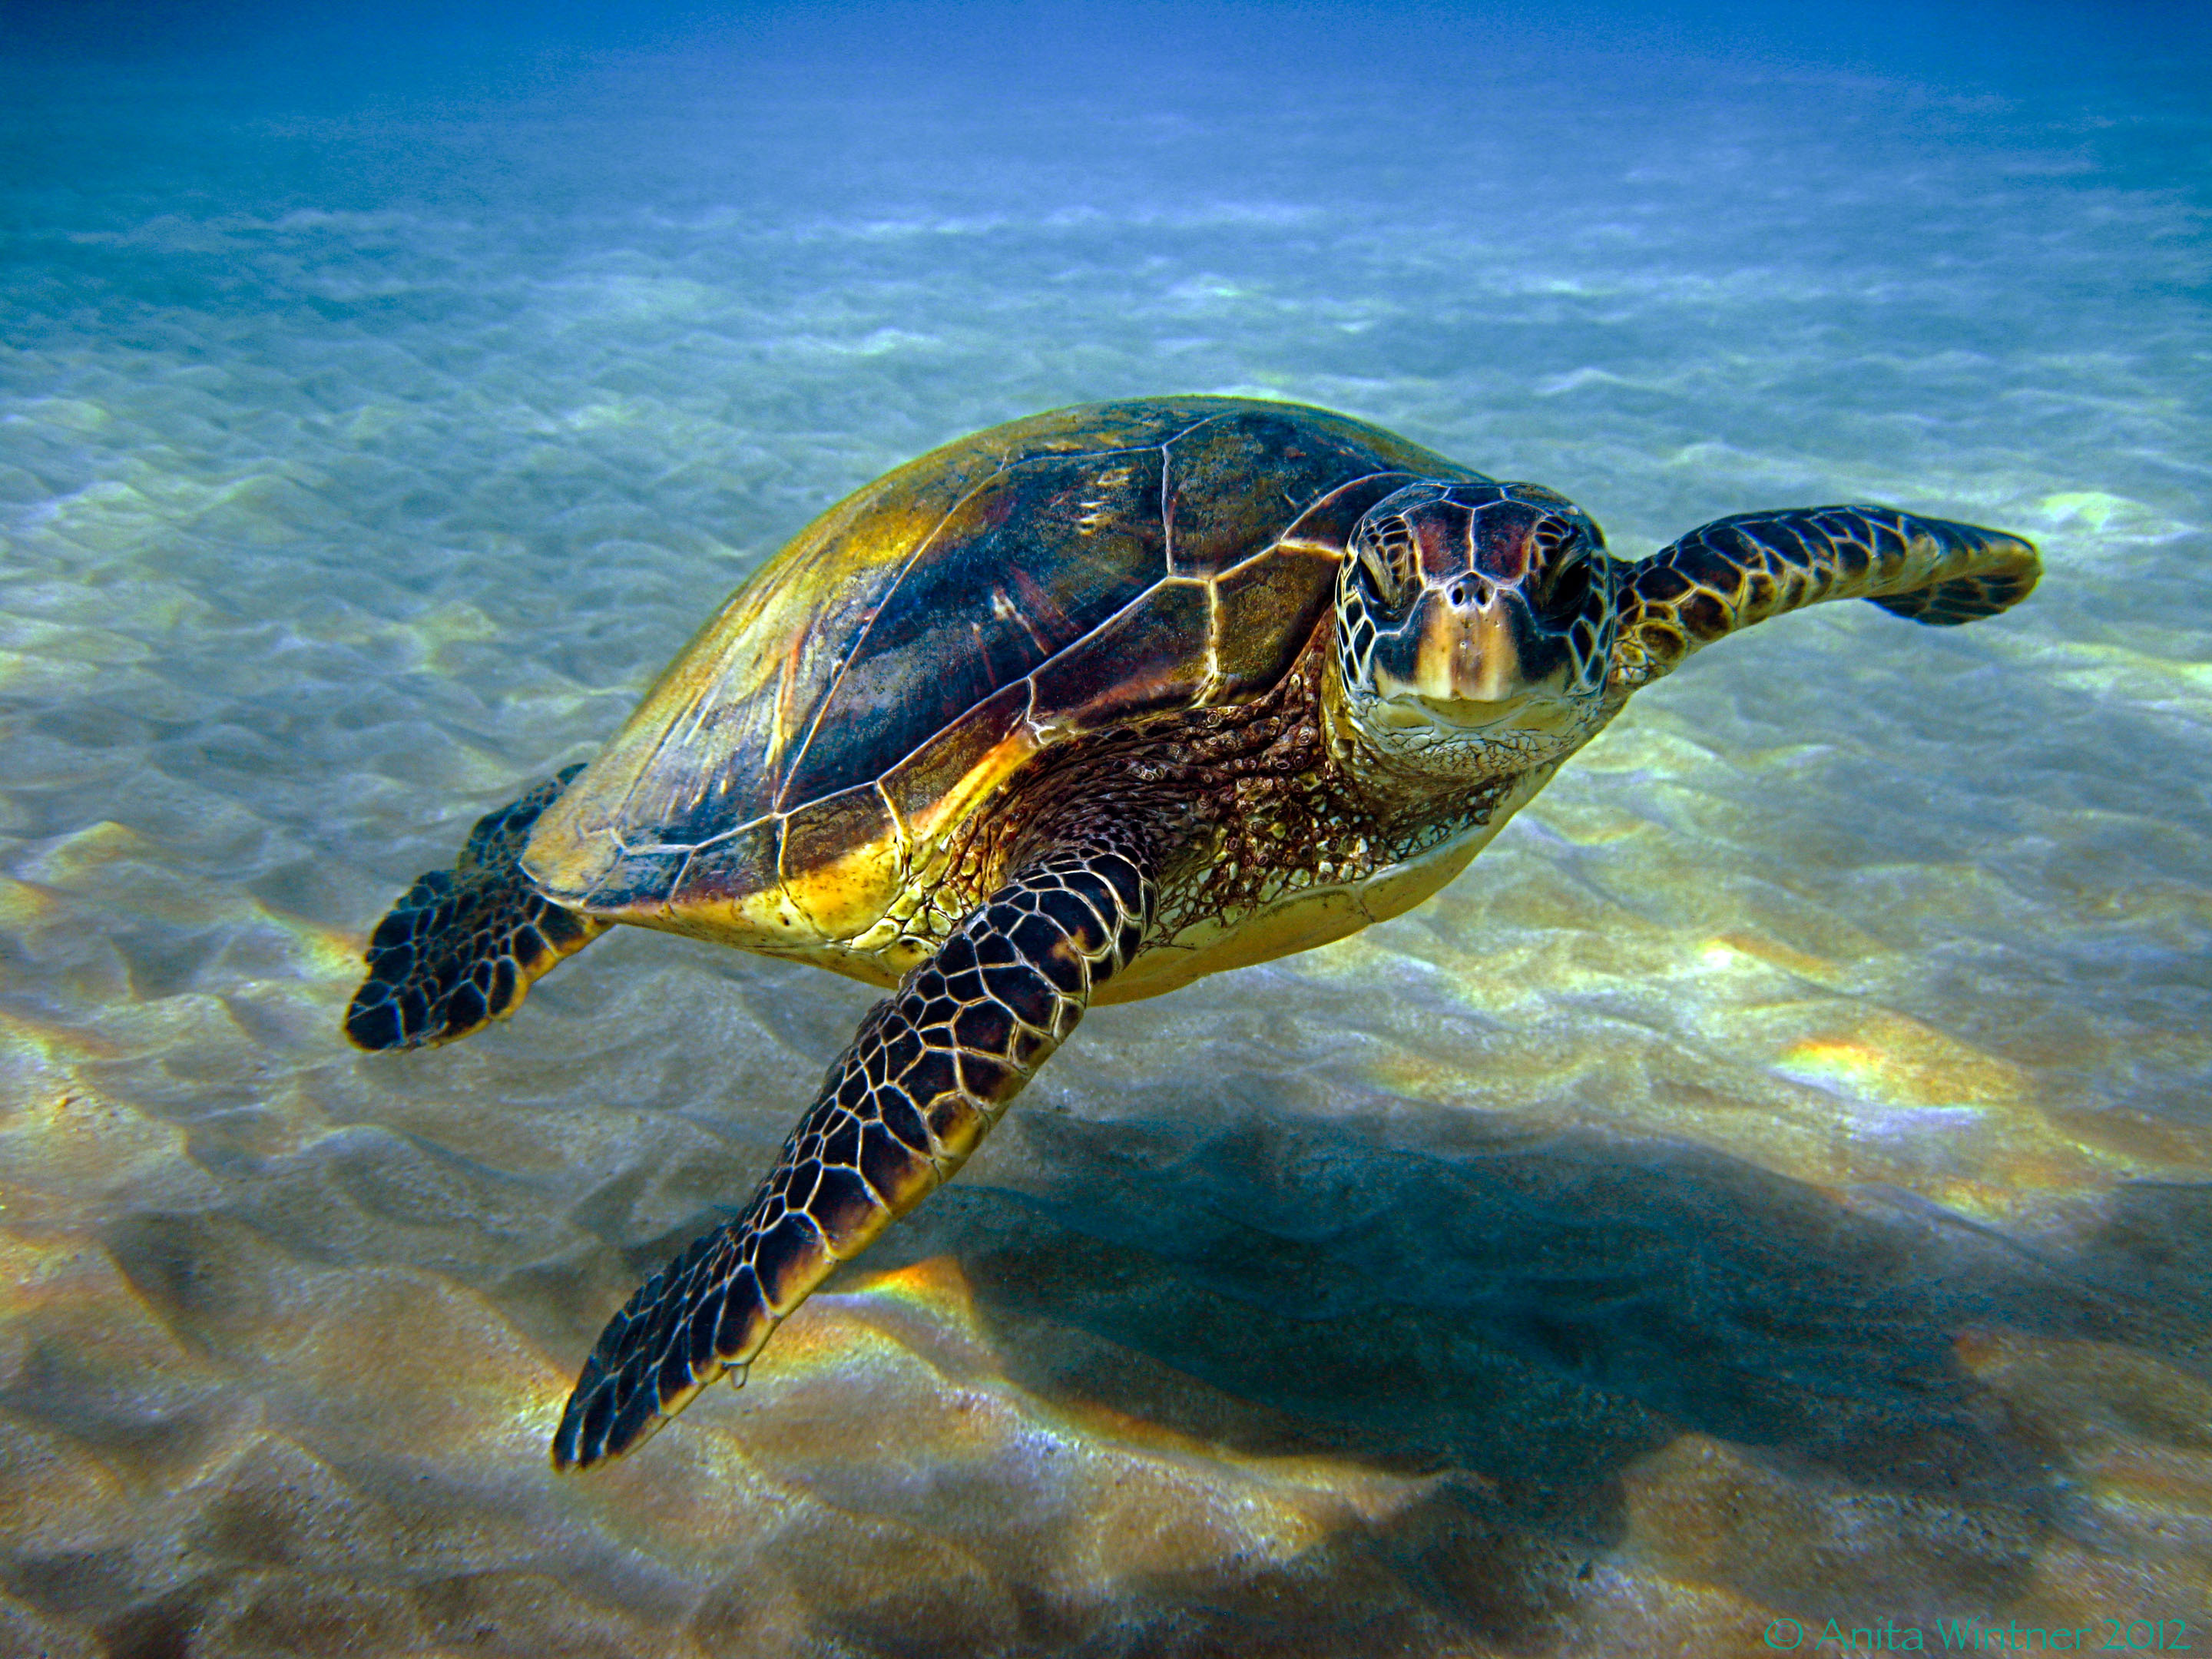  Tortugas marinas usan la posición del sol para orientarse, revela estudio